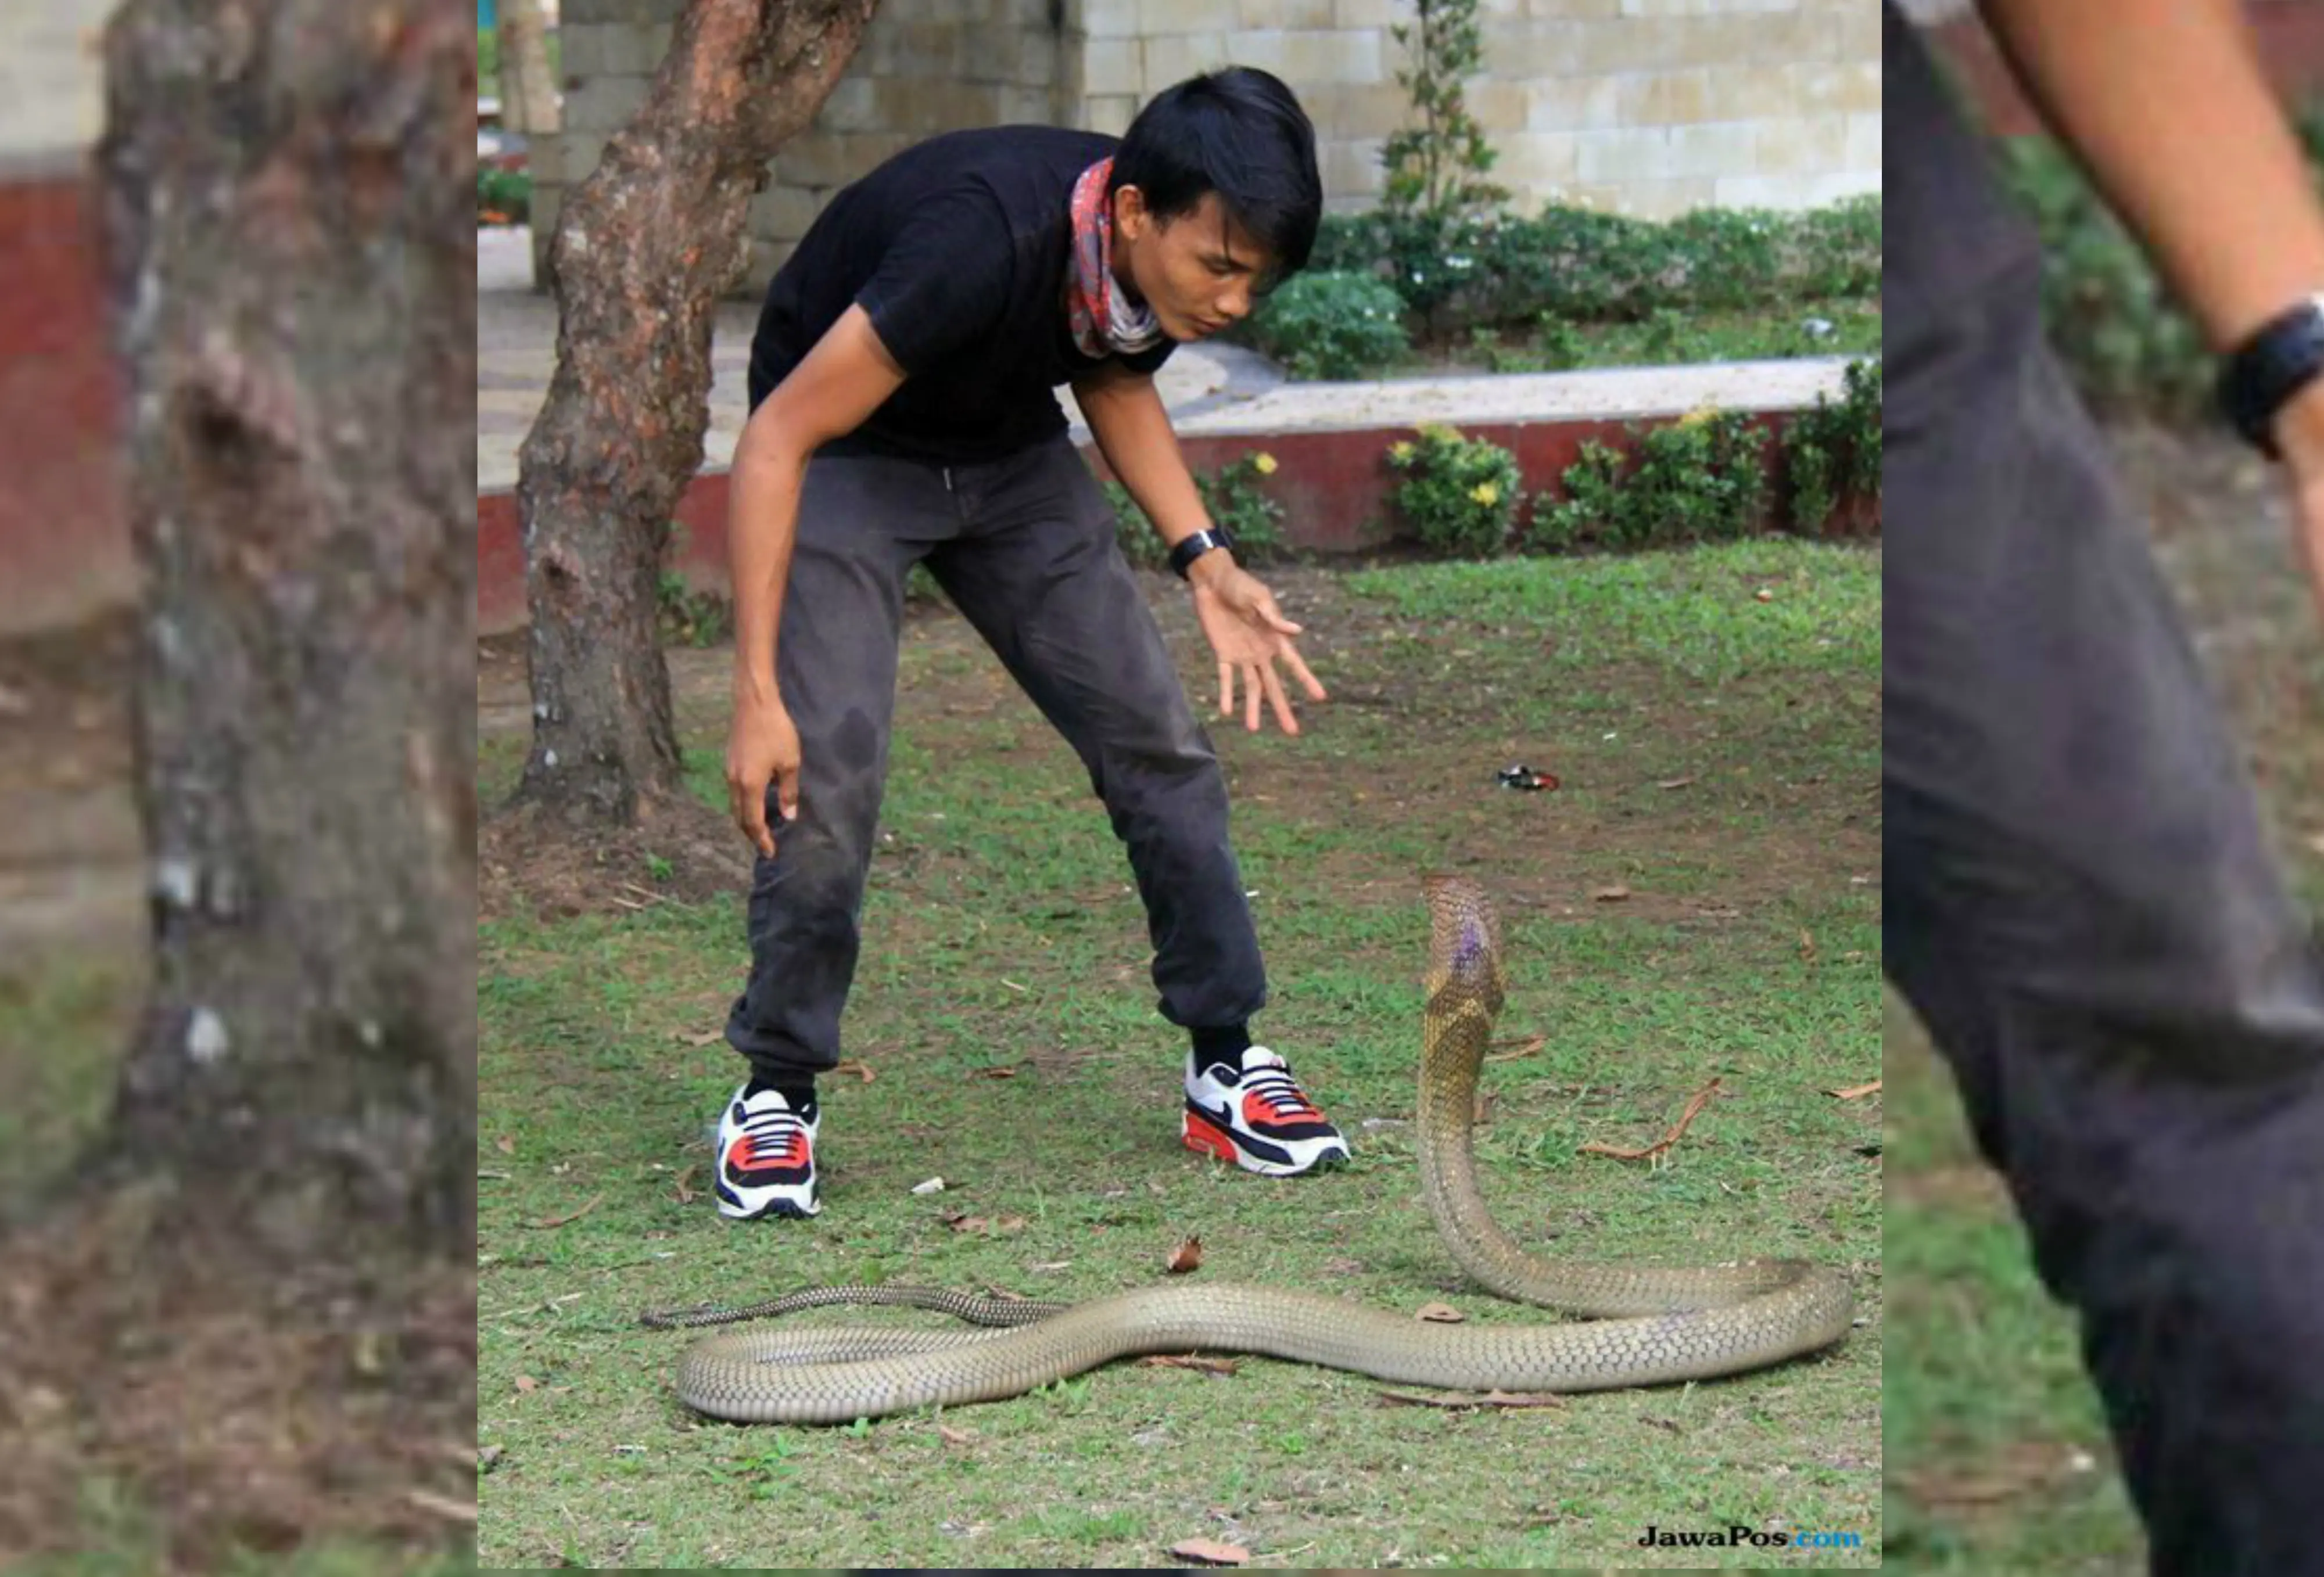 Rizki Ahmat saat bersama ular king cobra di Taman Tugu Soekarno, sebelum dipatuk ular peliharaannya di Bundaran Besar, Kota Palangkaraya, Kalimantan Tengah, Minggu pagi, 7 Juli 2018. (Dok. Kalteng Post/Jawa Pos Group)